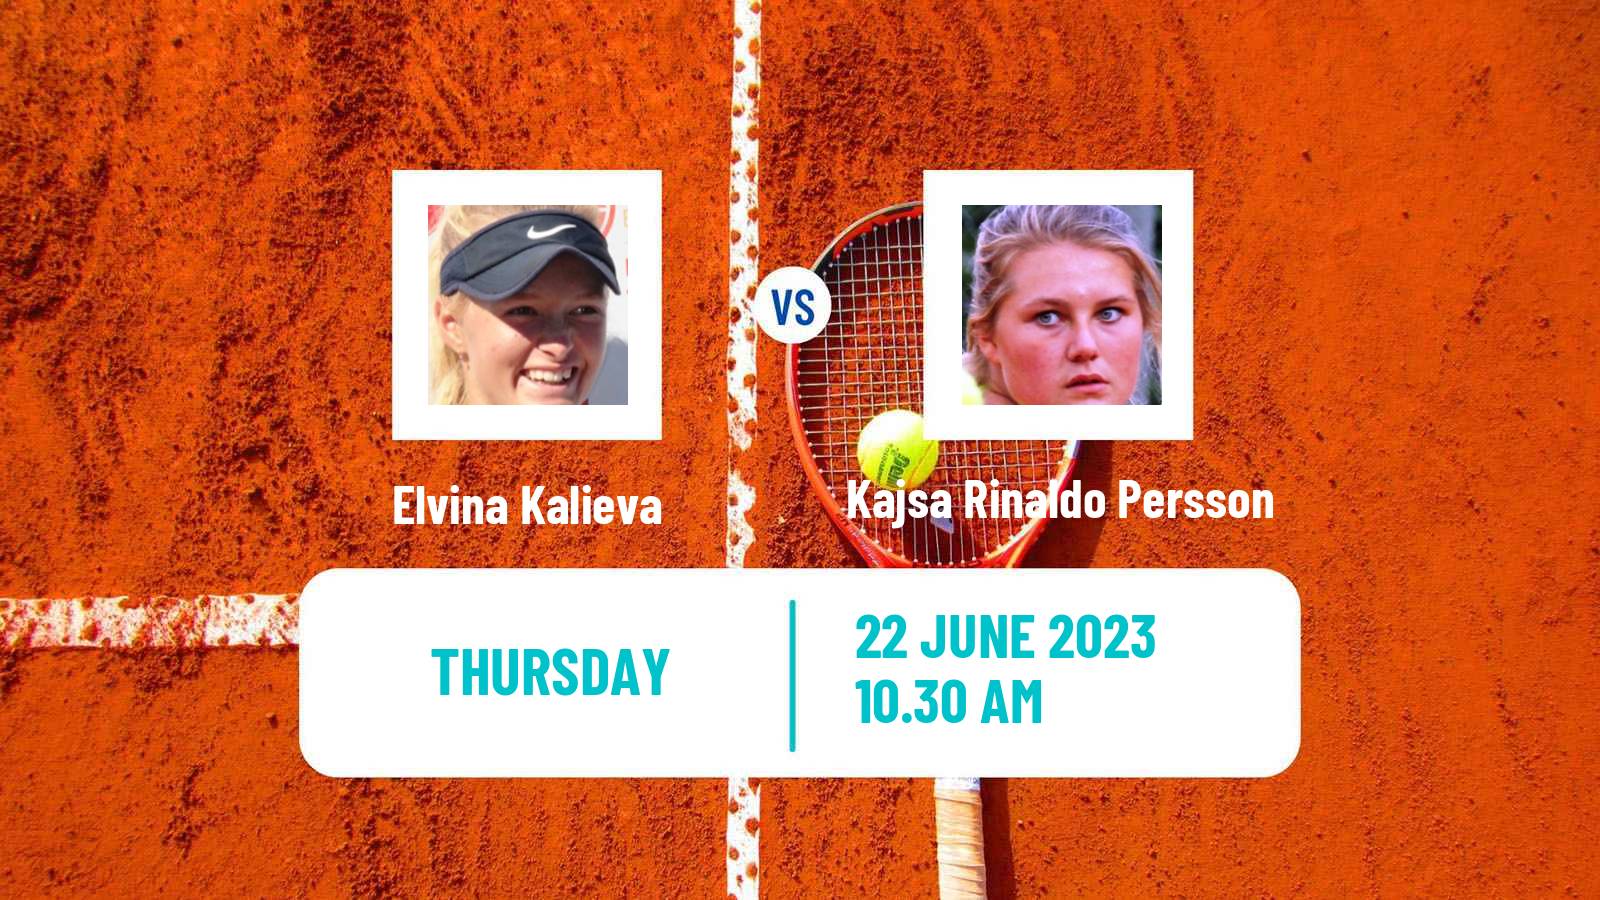 Tennis ITF W40 Ystad Women Elvina Kalieva - Kajsa Rinaldo Persson